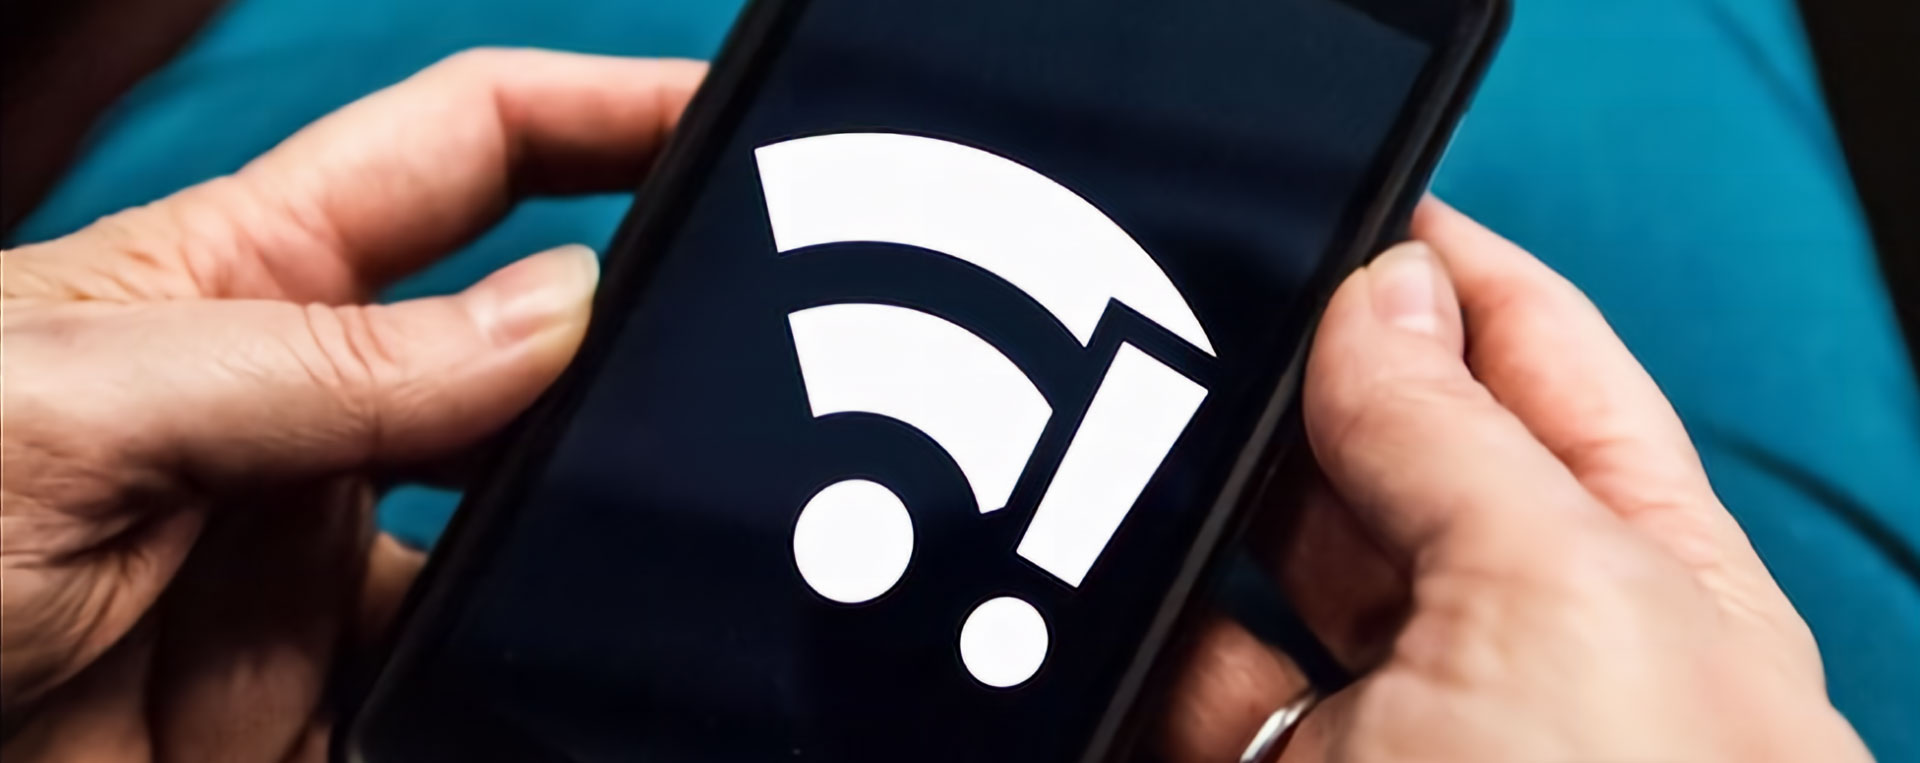 Cara mengatasi WiFi yang Terhubung Tapi Tidak Bisa Akses Internet